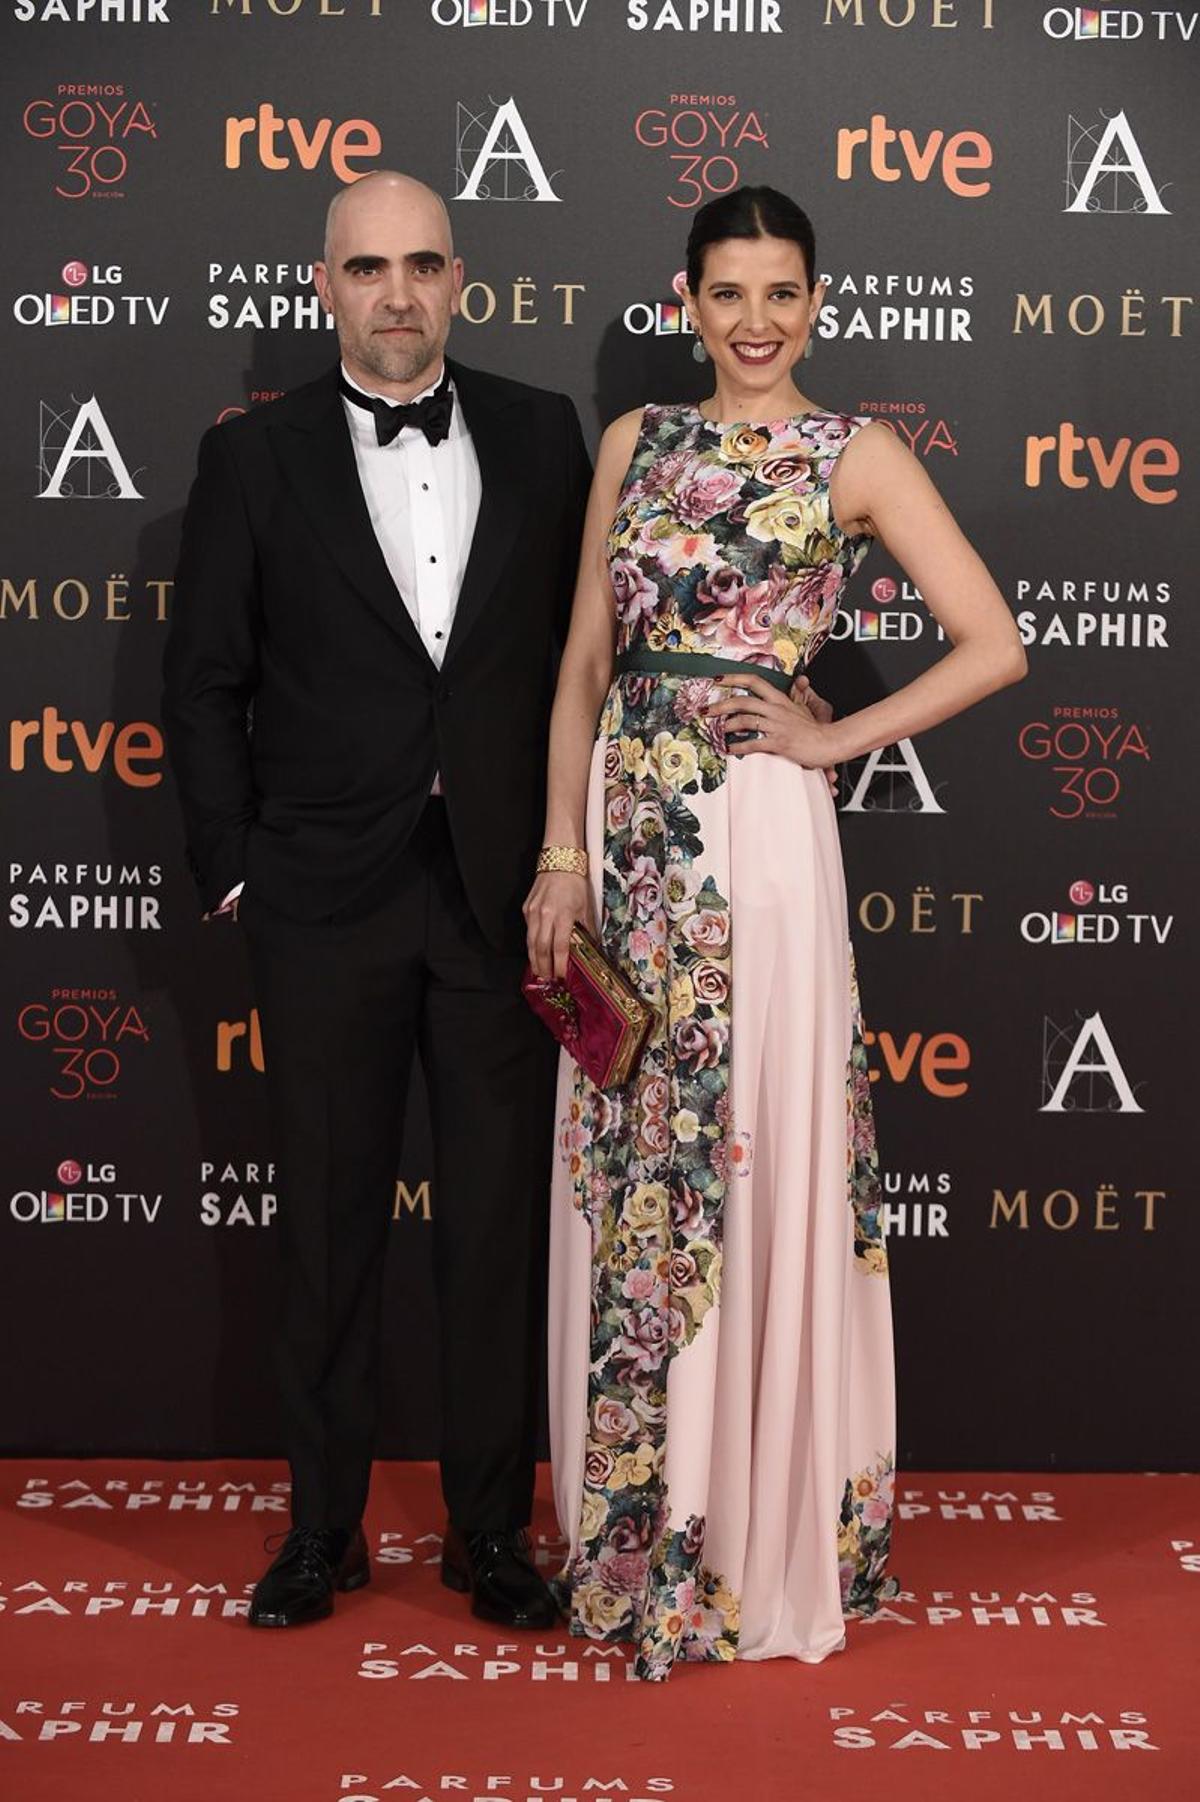 Luis Tosar y Malu Mayol con vestido de Dolores Promesas en los Premios Goya 2016